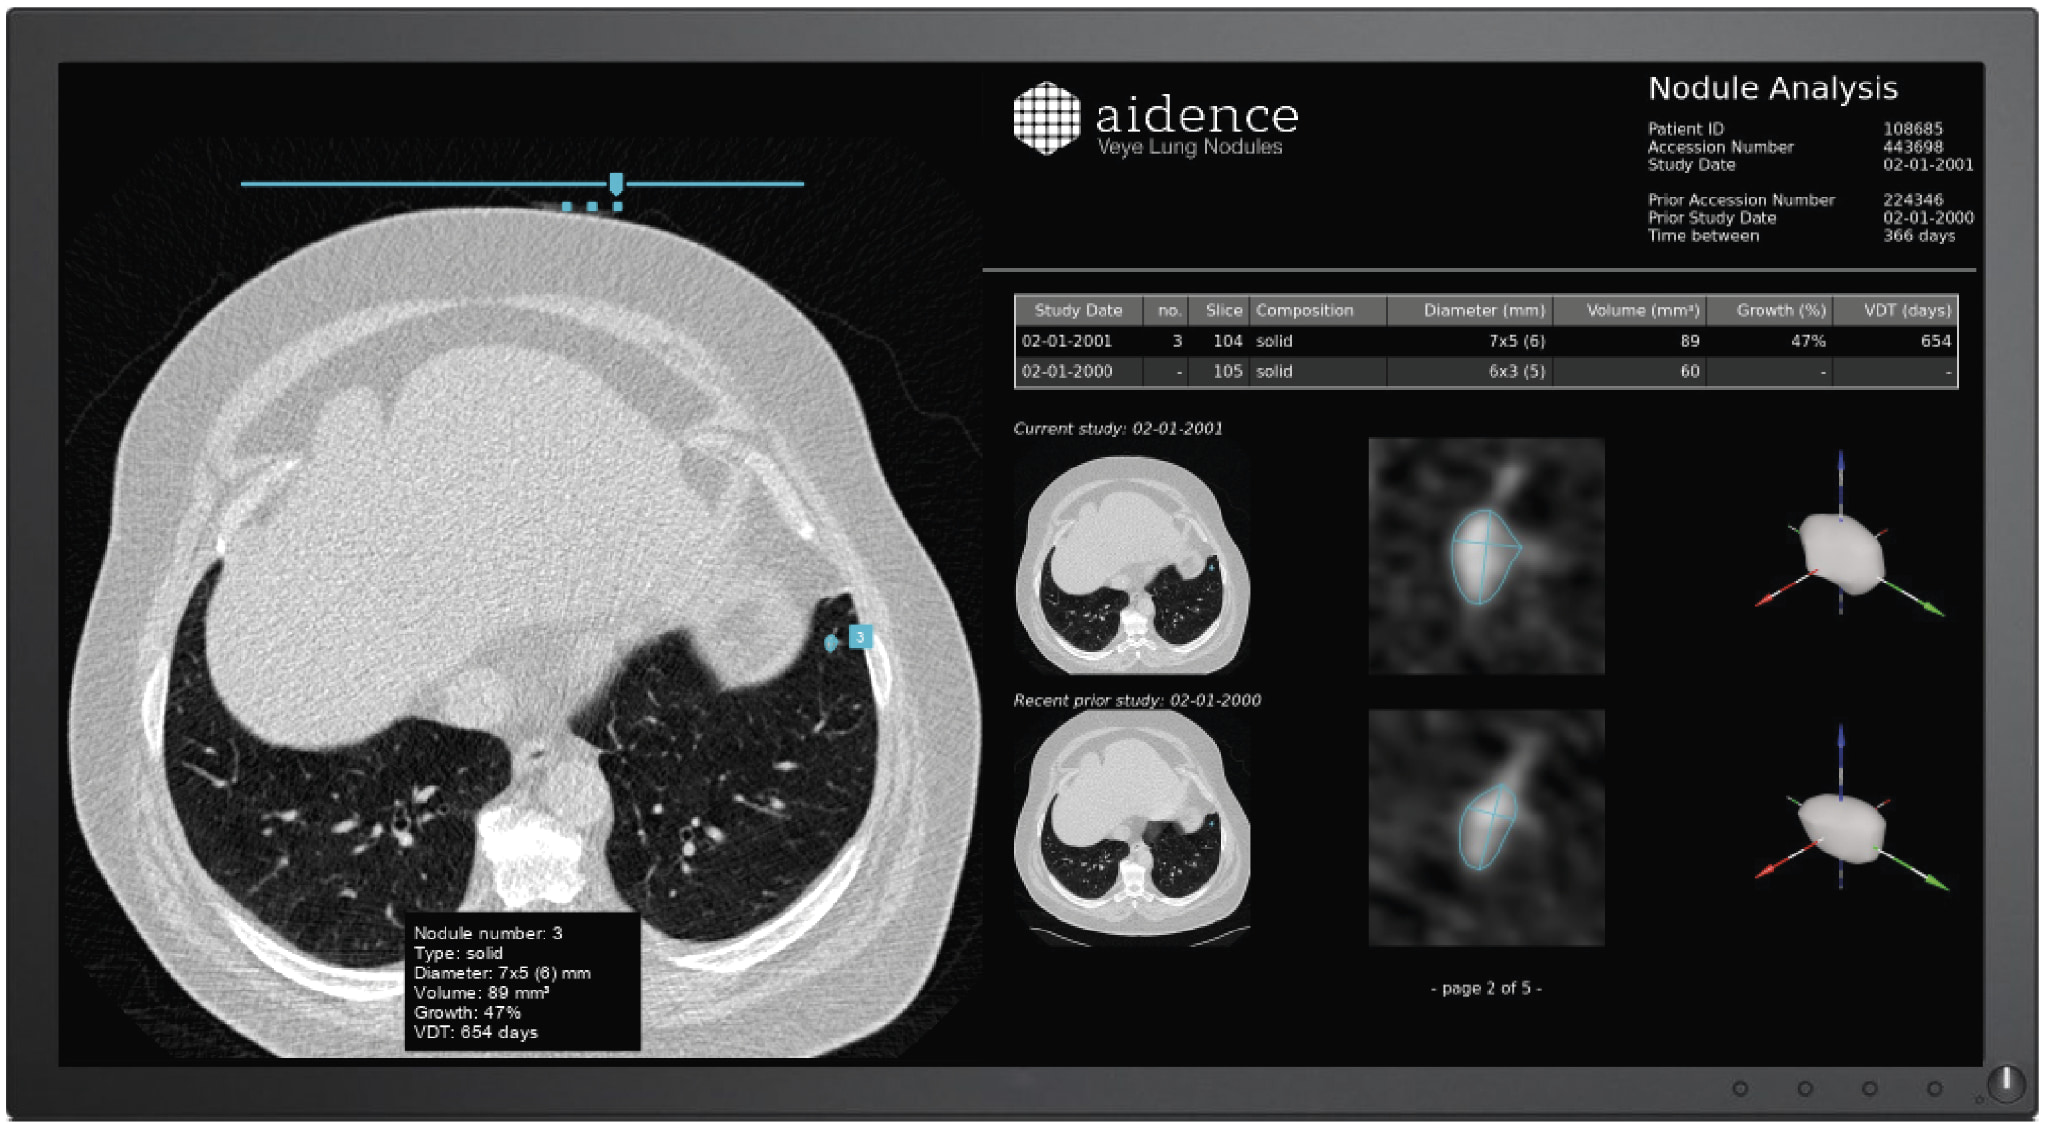 Il sistema di Aidence aiuta a rilevare, misurare, classificare e seguire la crescita dei noduli polmonari - Immagine di Veye Lung Nodules.